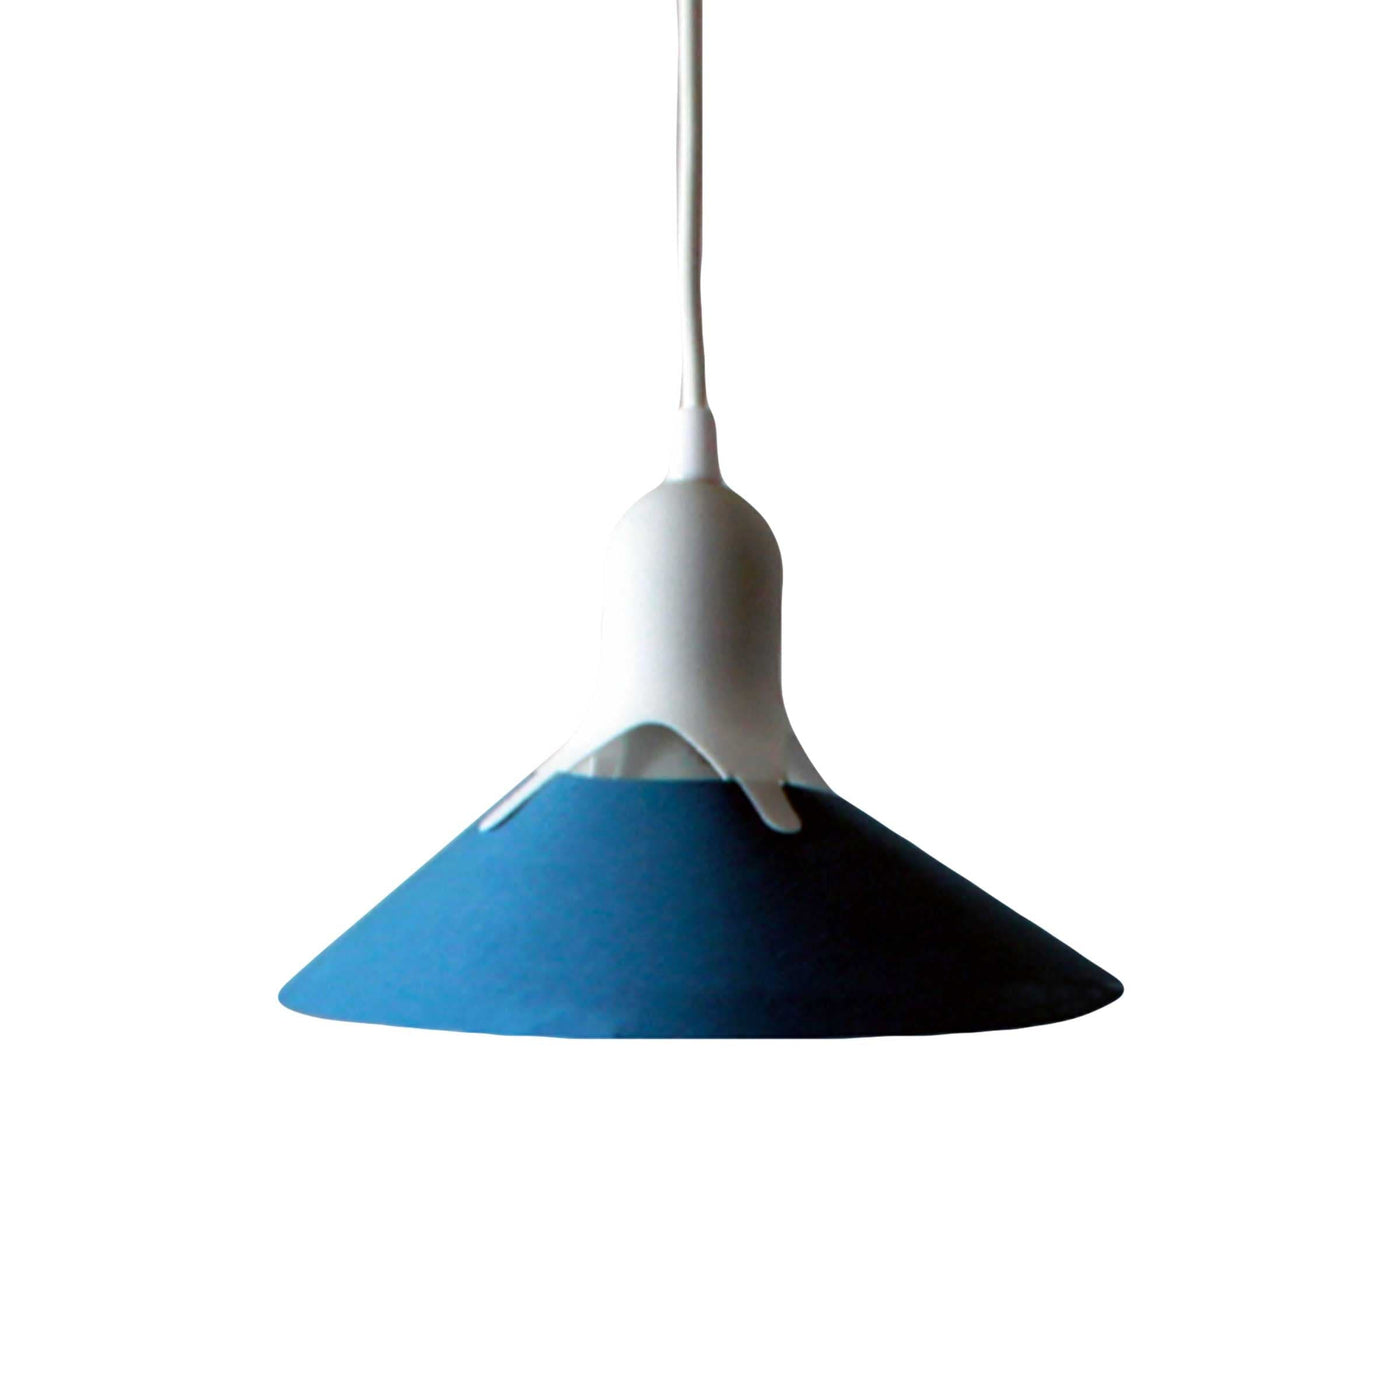 Suspension Lamp Element GRAFFETTA by Leonardo Fortino 06